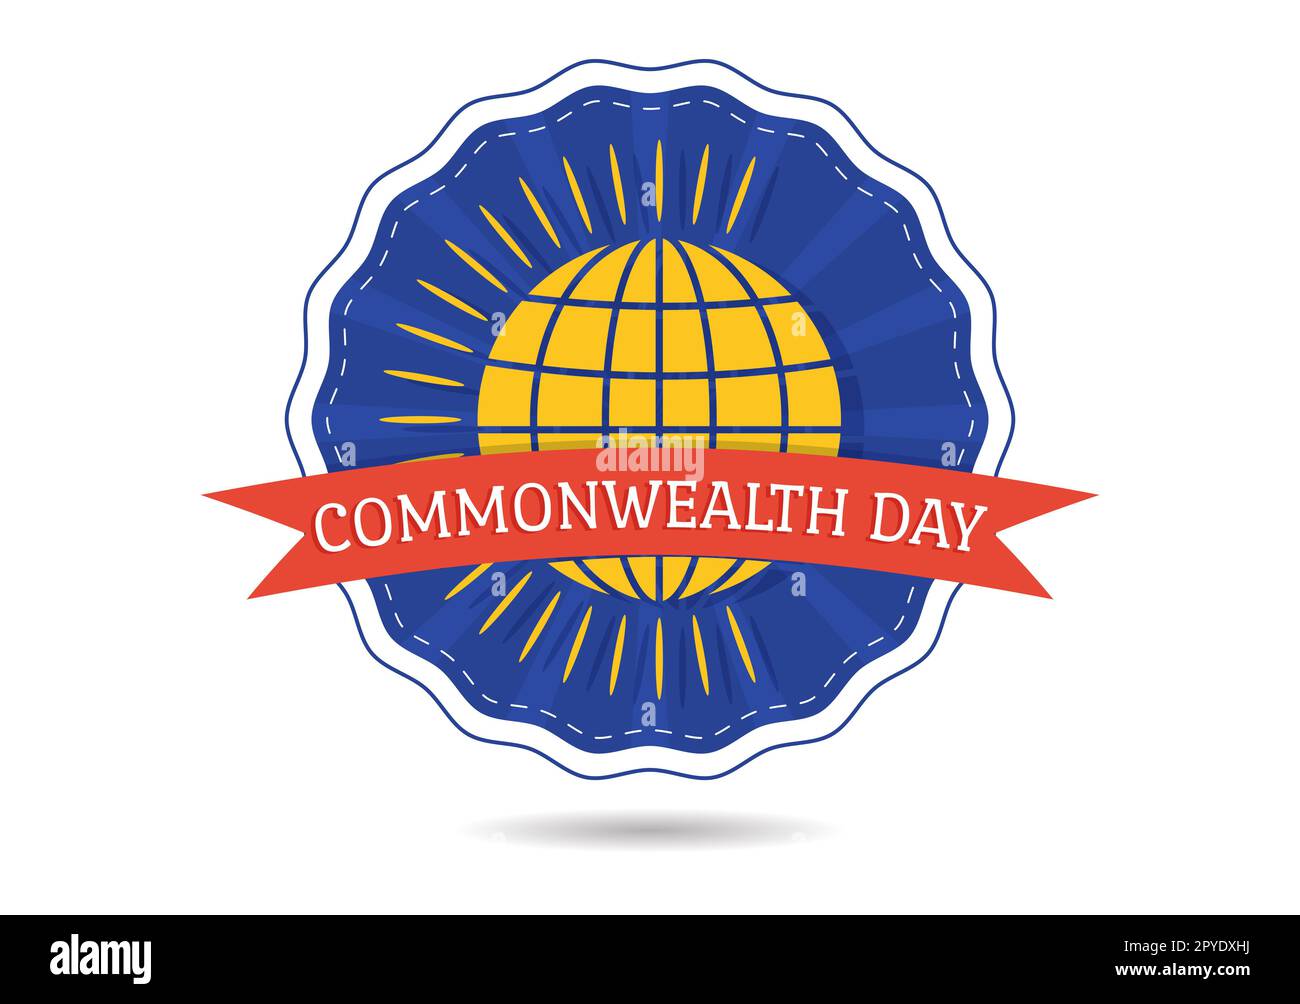 Commonwealth of Nations Day am 24. Mai Illustration mit Hilfs führt Aktivitäten von Commonwealth-Organisationen in flachen, handgezeichneten Vorlagen an Stockfoto